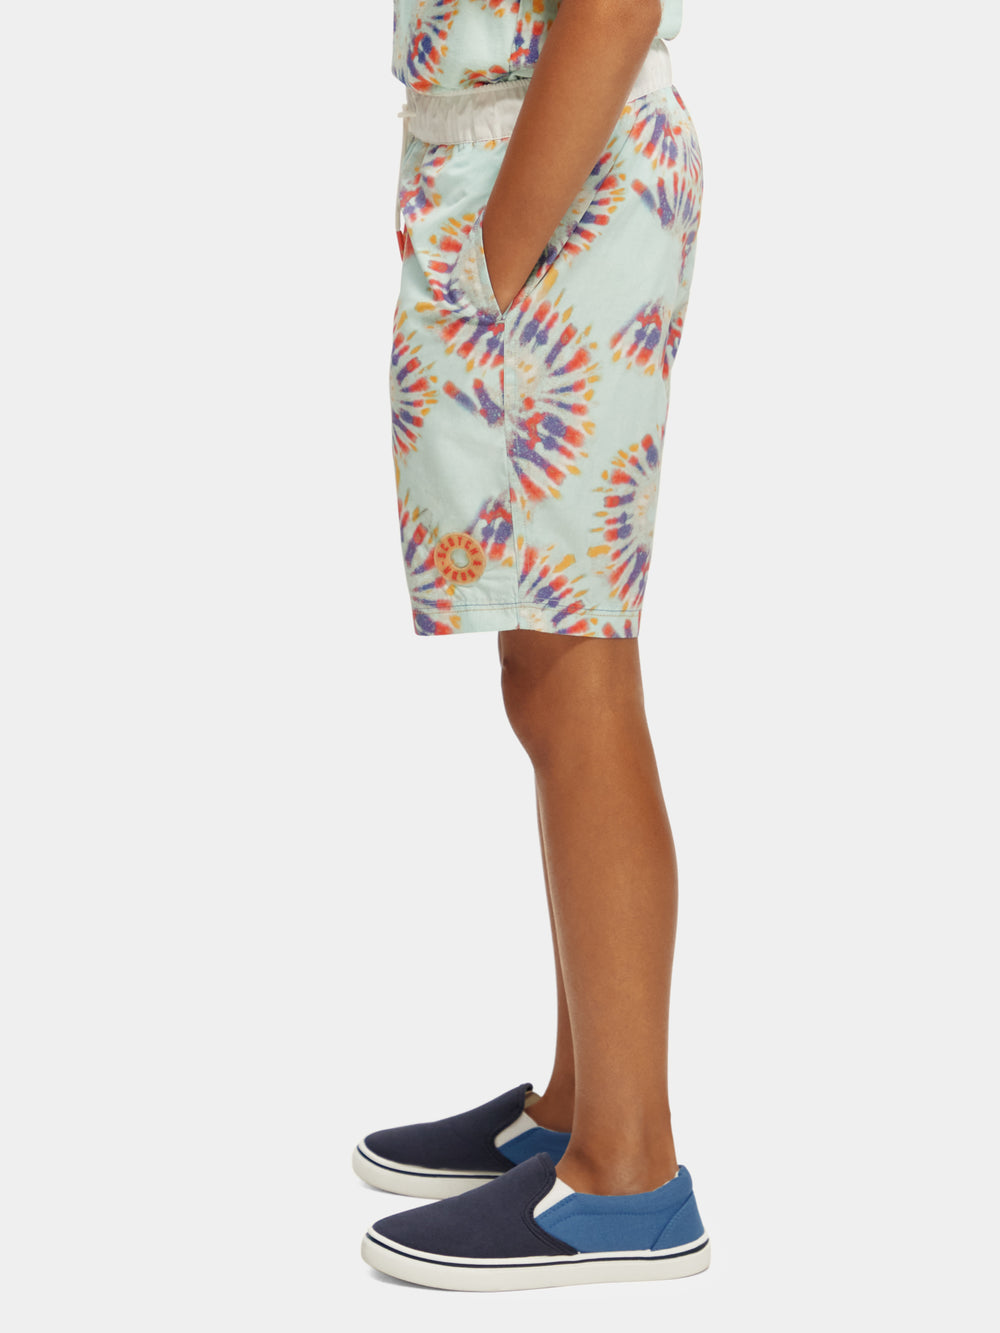 Tie-dyed printed swim shorts - Scotch & Soda NZ